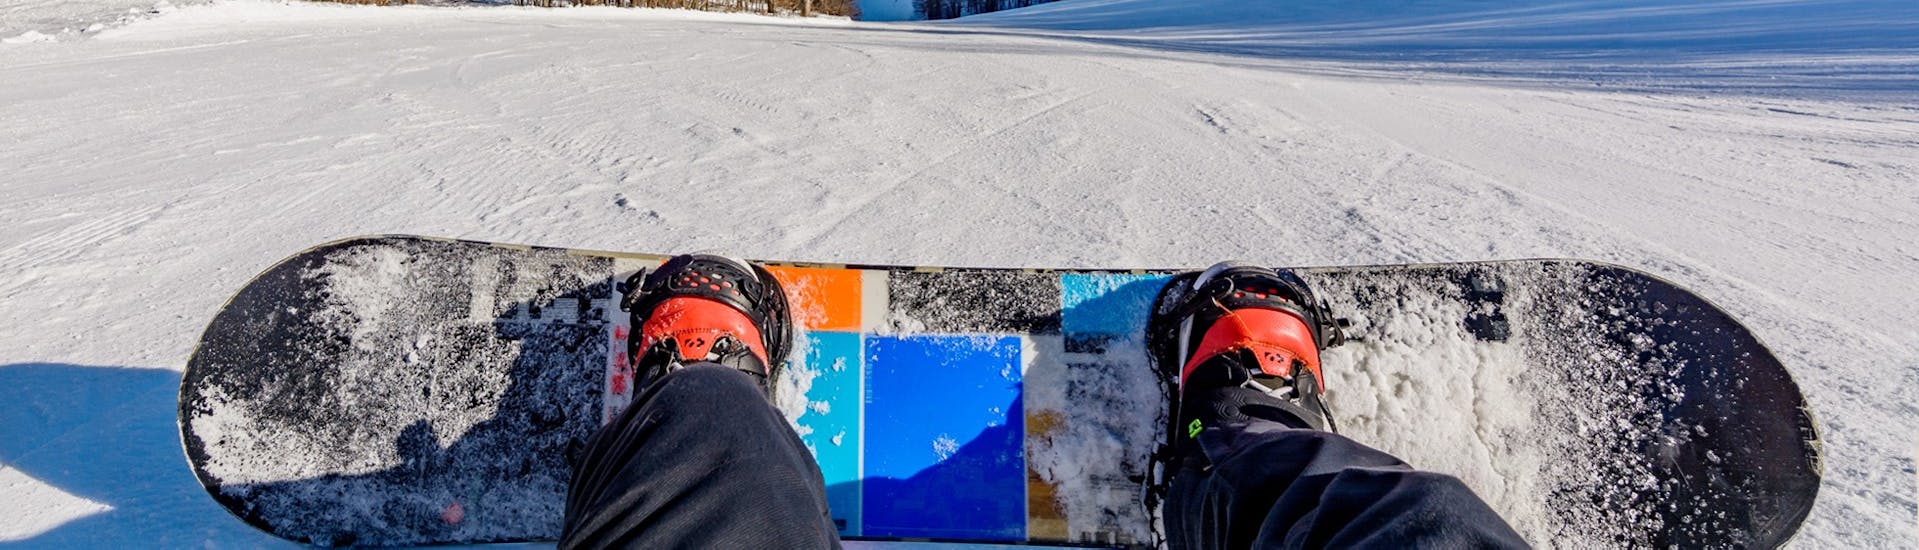 Clases de snowboard privadas a partir de 4 años para todos los niveles.